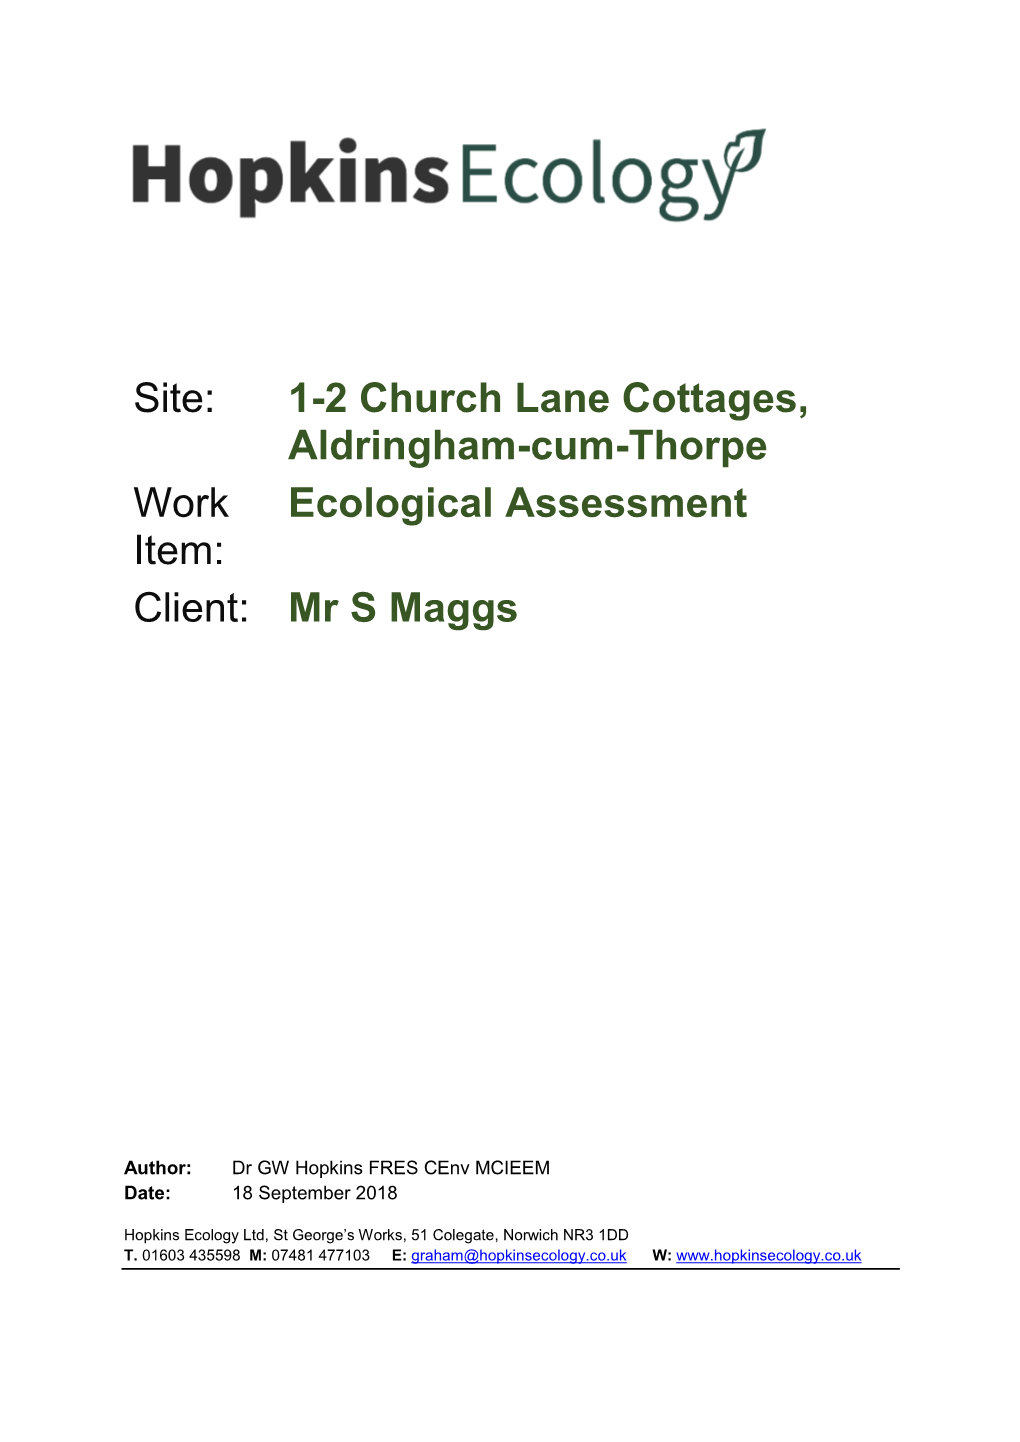 Site: 1-2 Church Lane Cottages, Aldringham-Cum-Thorpe Work Item